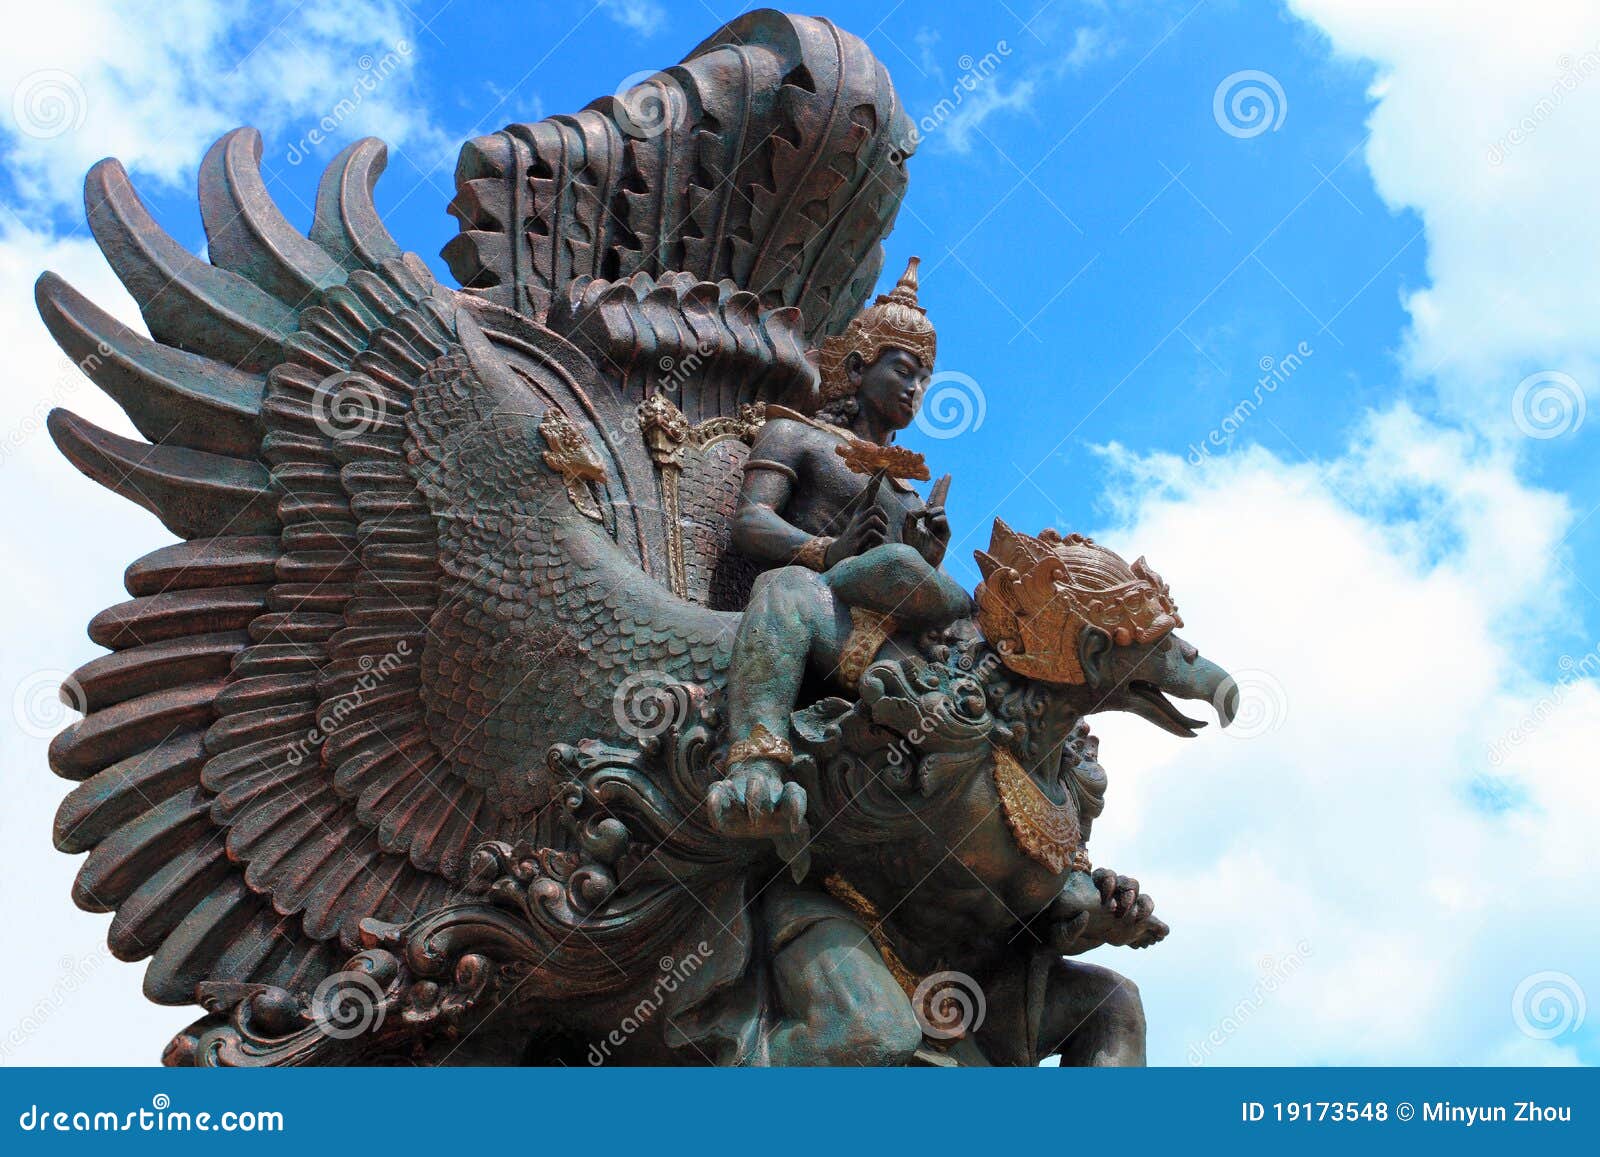  Geschichten  Park von Bali  stockfoto Bild von idol 